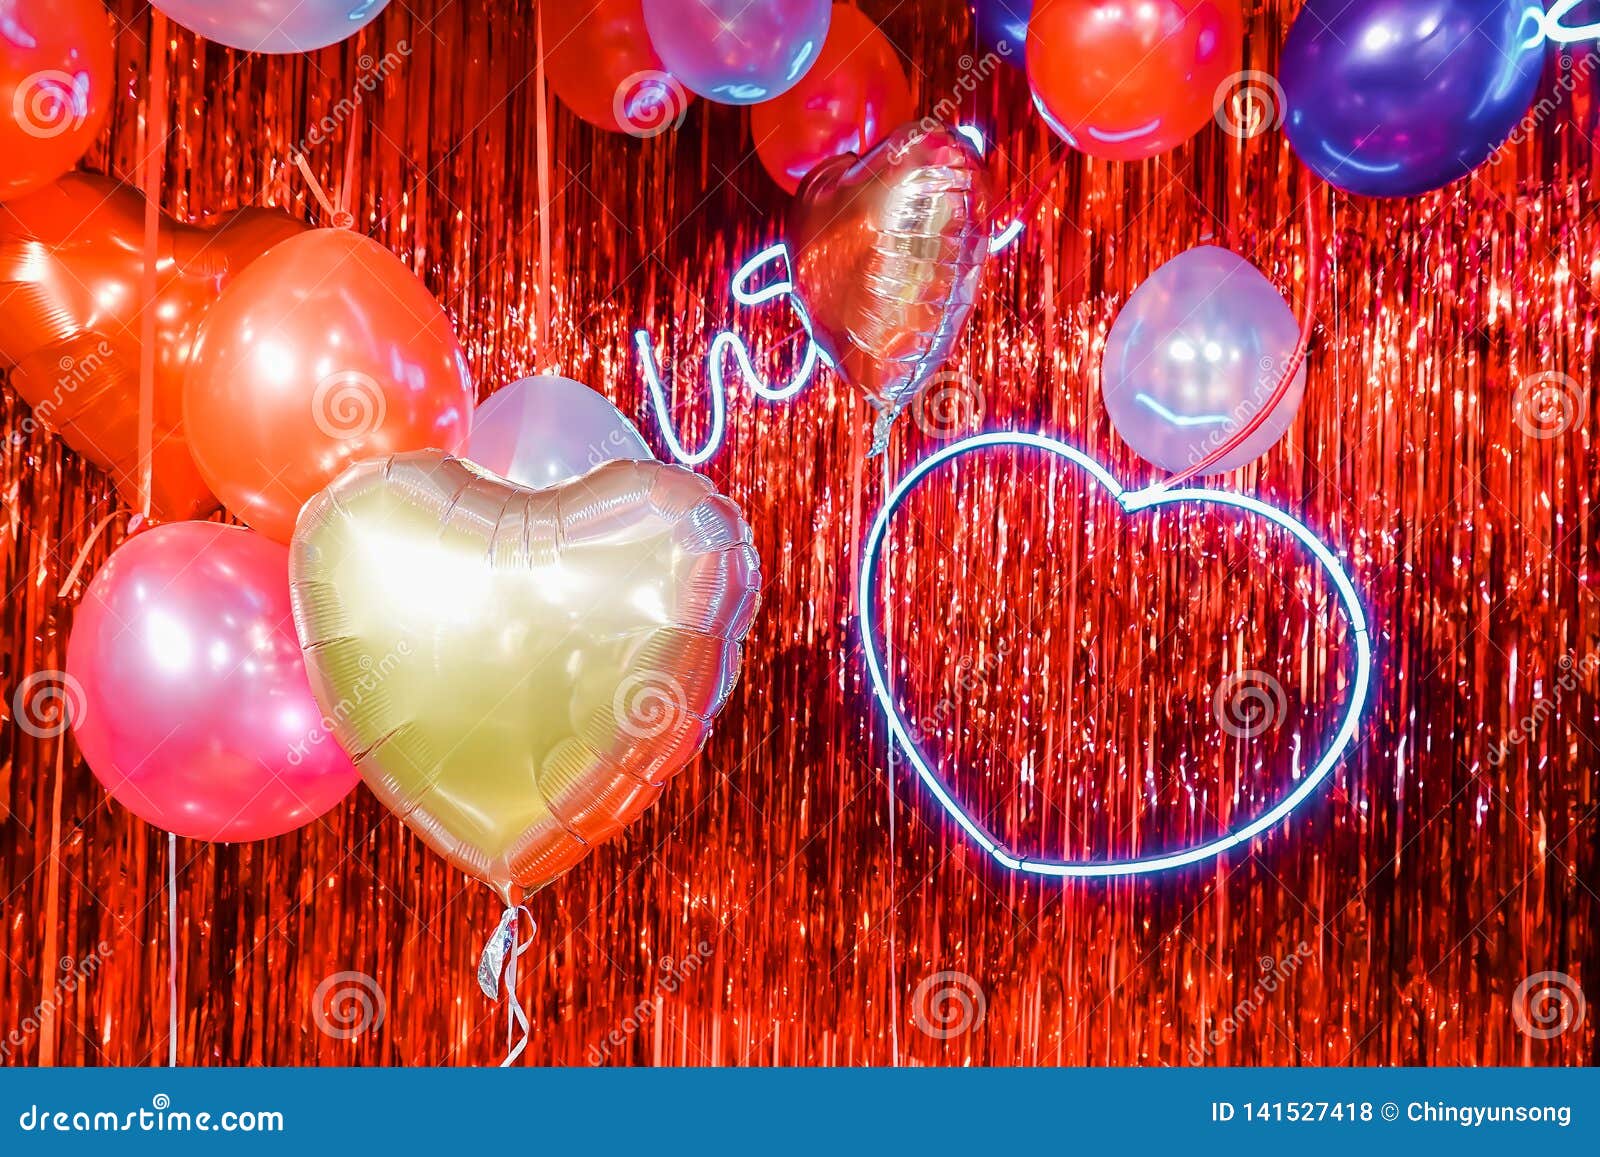 Khinh khí cầu (Air Balloons): Màu sắc tươi sáng, những khinh khí cầu đầy ấn tượng và vô cùng lãng mạn. Cùng đến với hình ảnh này để cảm nhận những khoảnh khắc bình yên khi lướt trên bầu trời. Nhiệm vụ của bạn là chỉ việc tận hưởng, thỏa sức mơ mộng và bay cao cùng các khinh khí cầu.